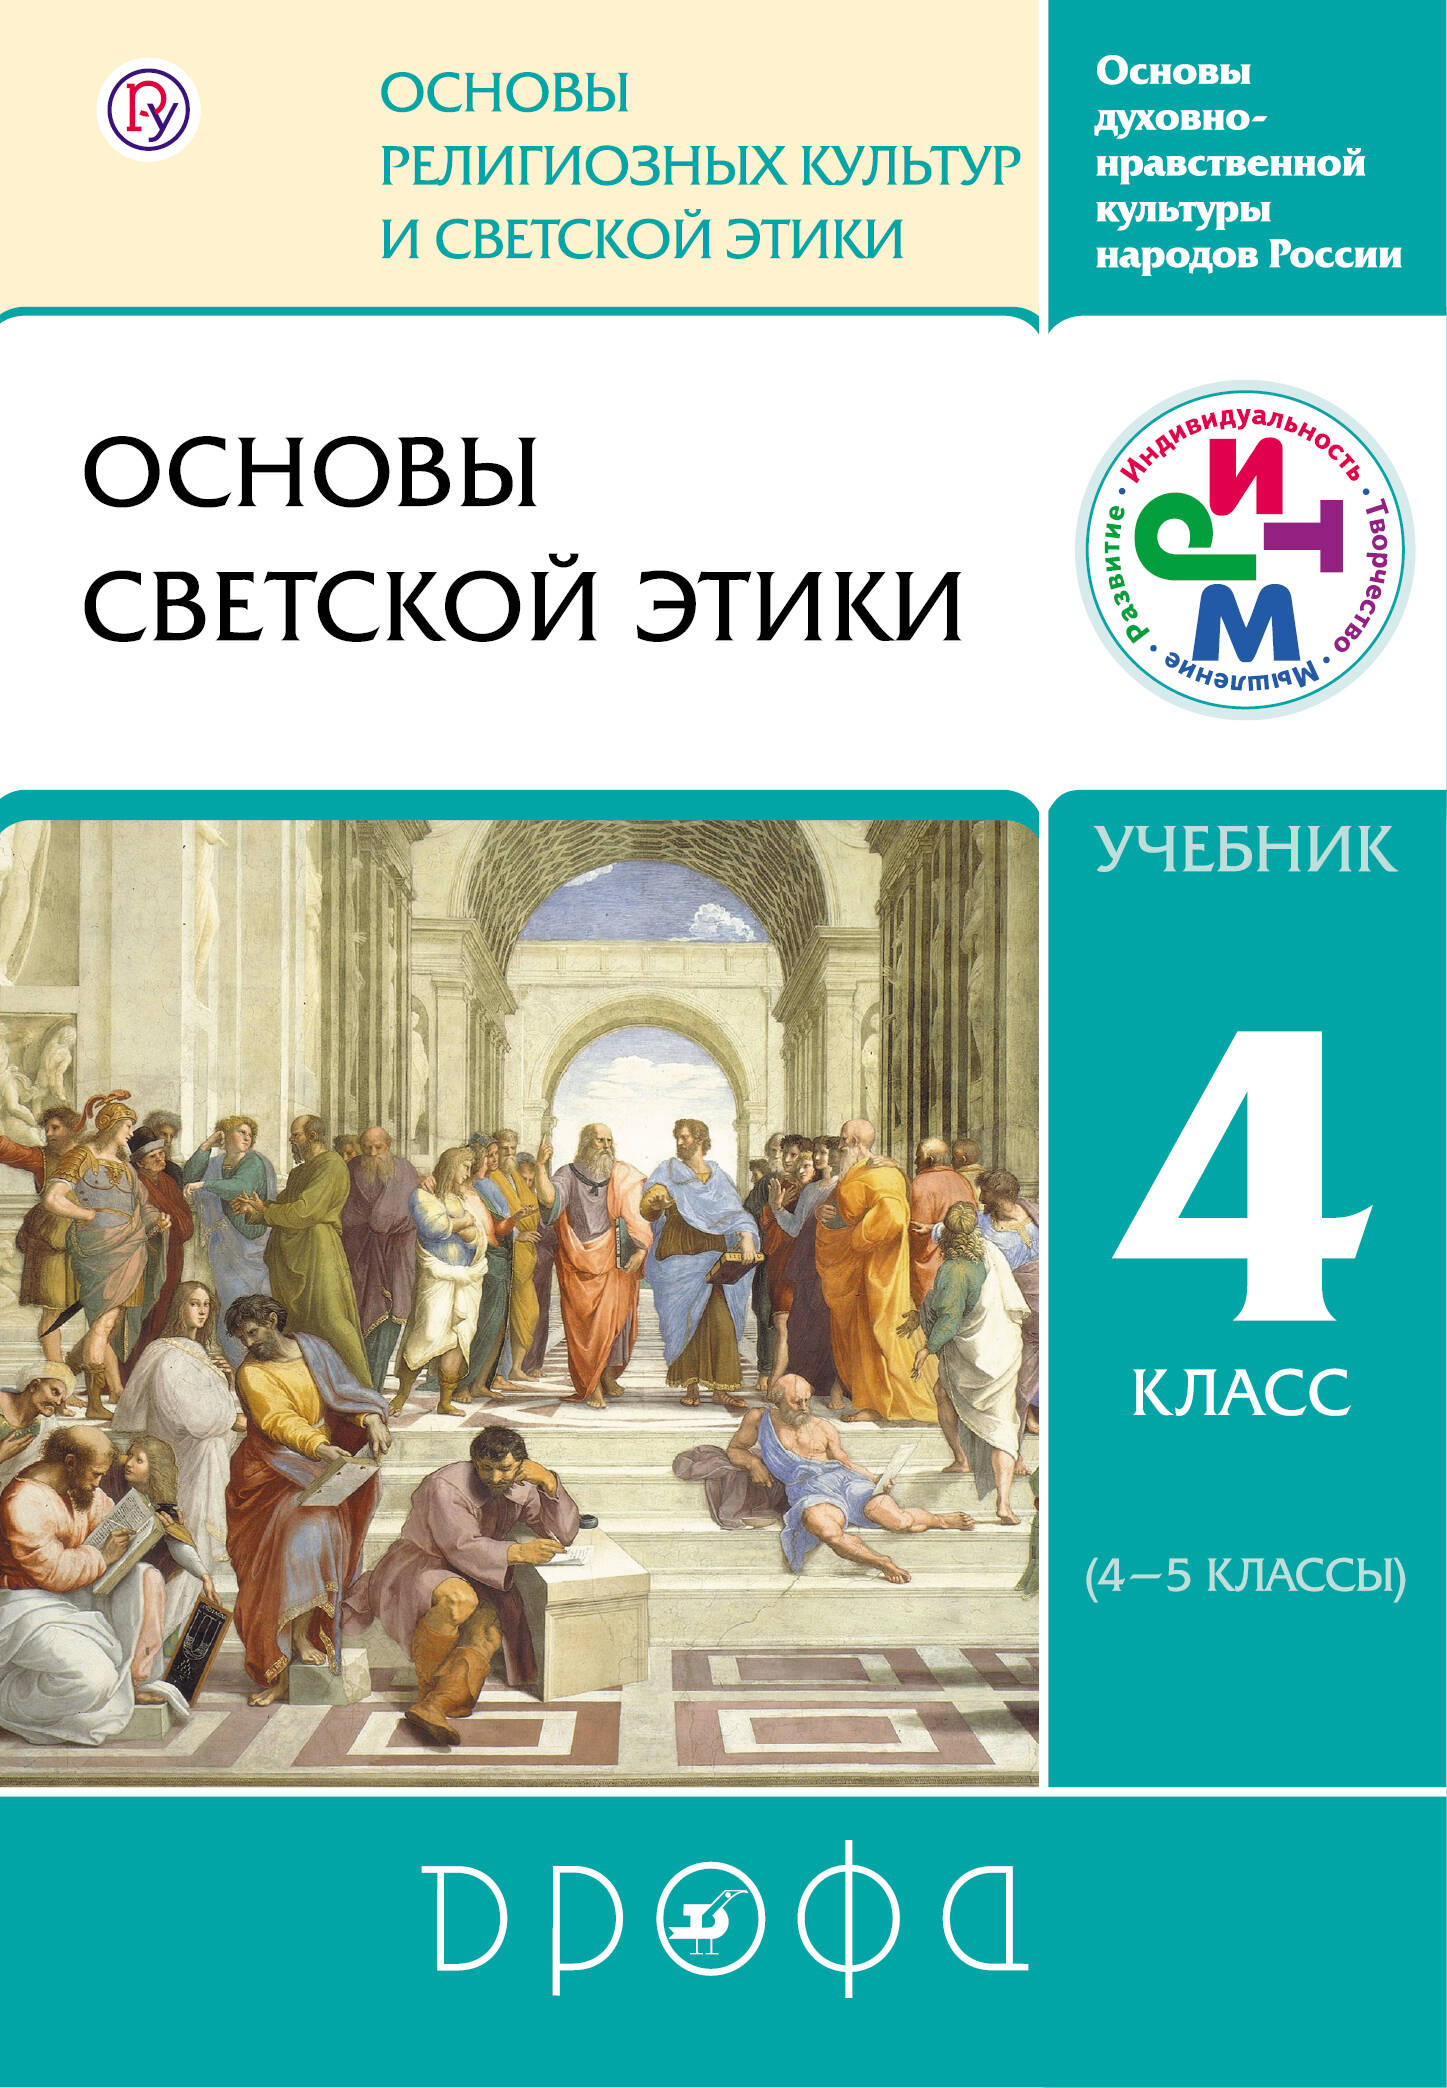 Основы православной культуры 5 класс гдз